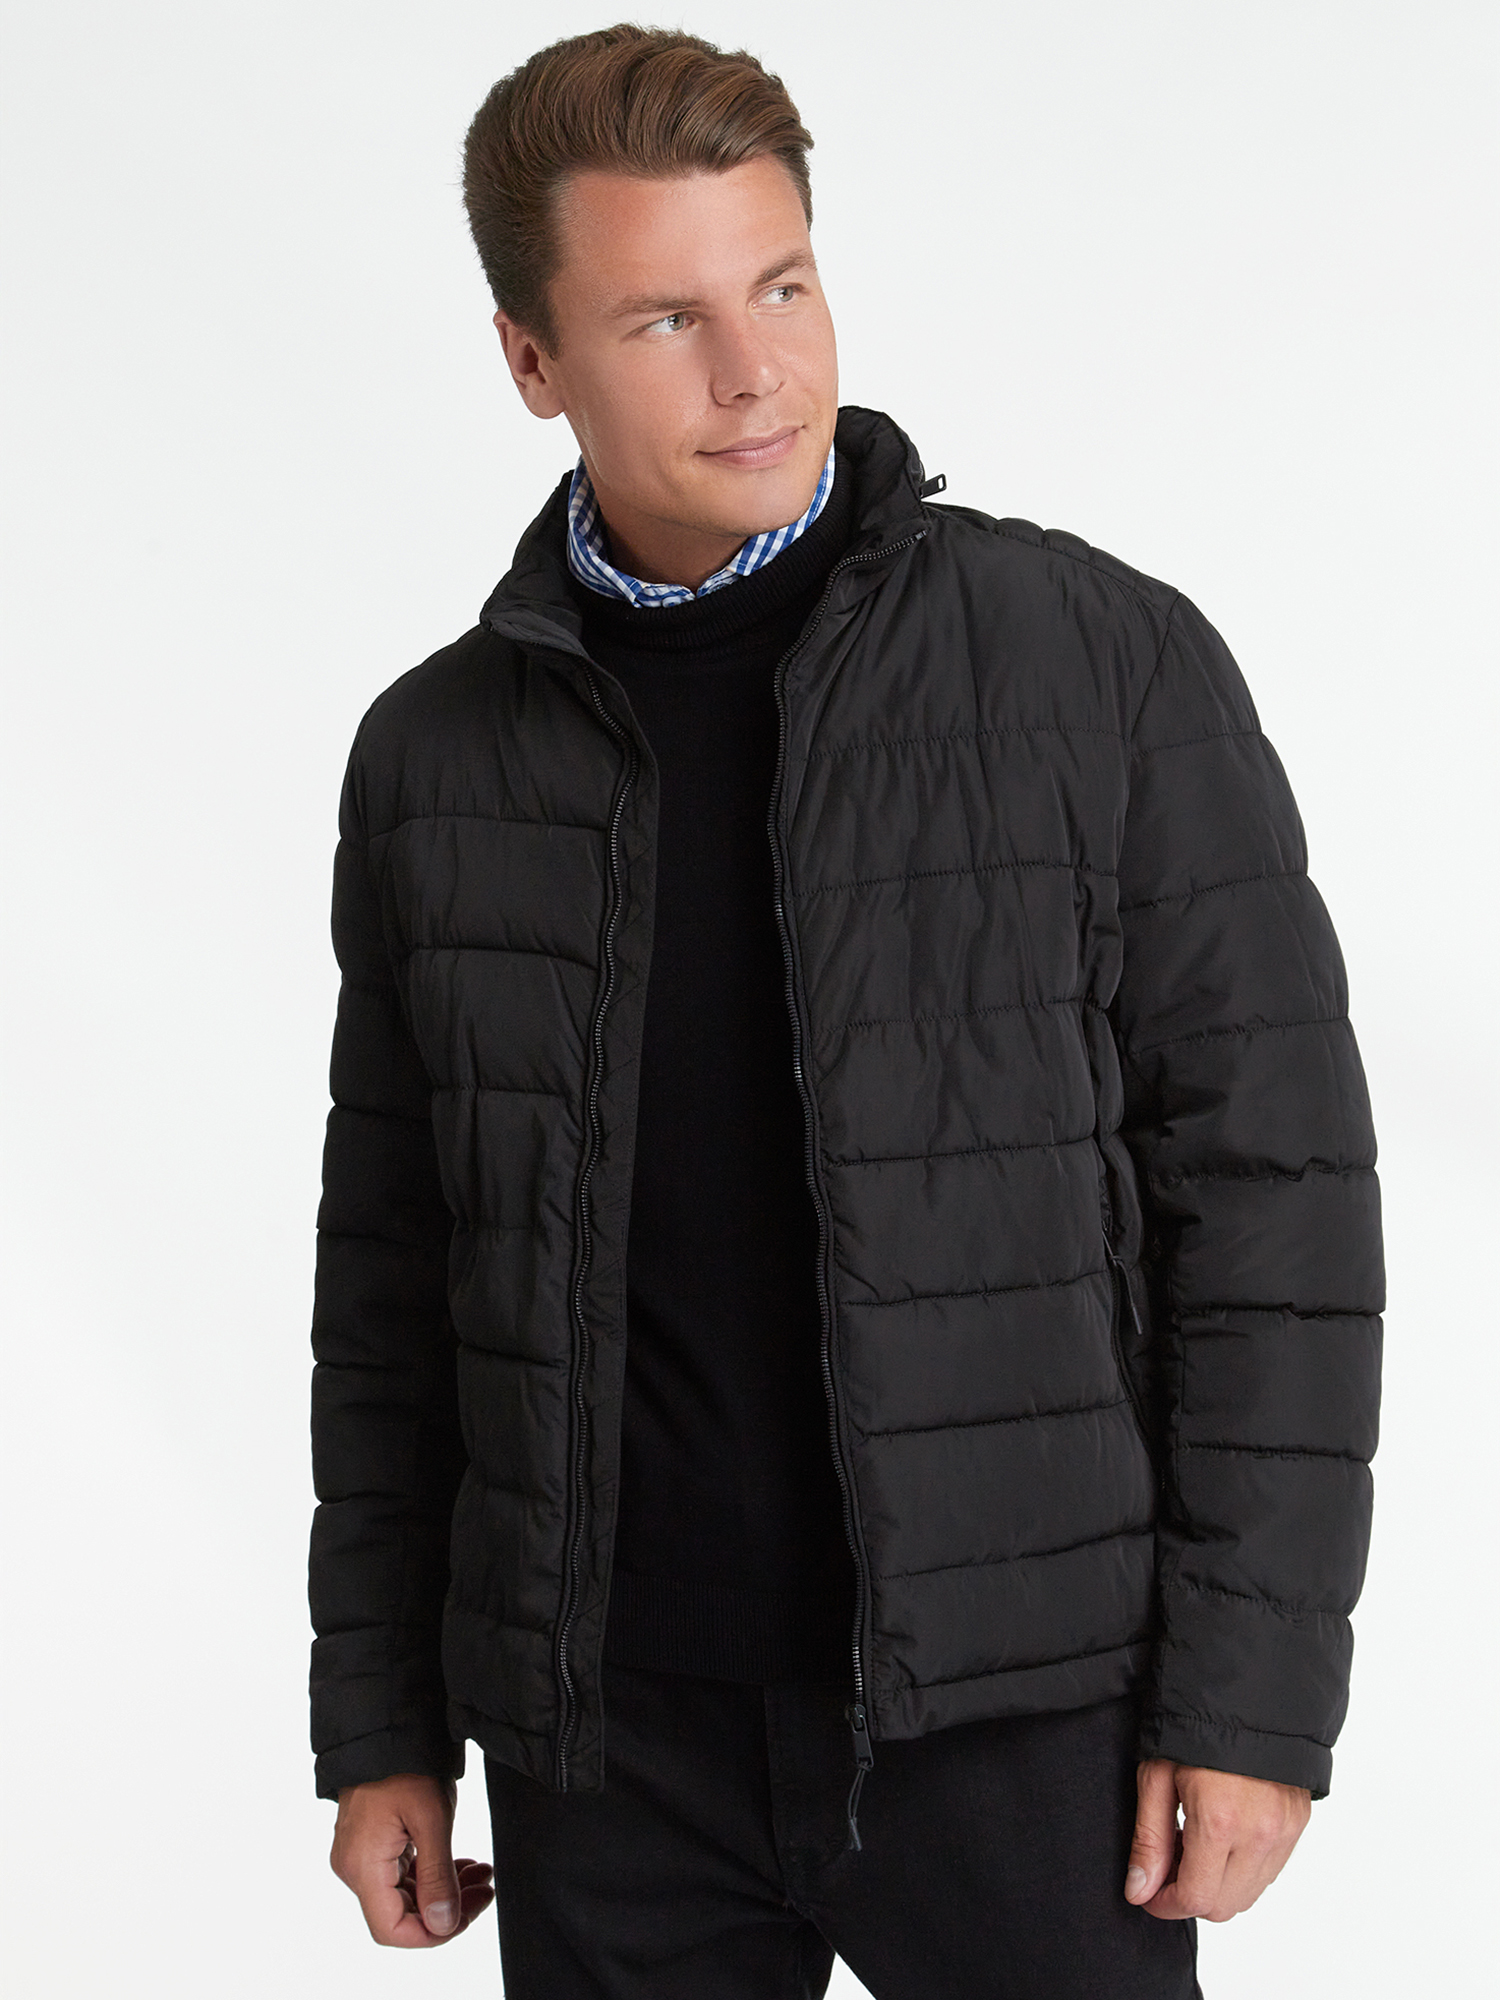 Куртка мужская oodji 1L111053M-1 черная L - купить в Москве, цены на Мегамаркет | 100042061493